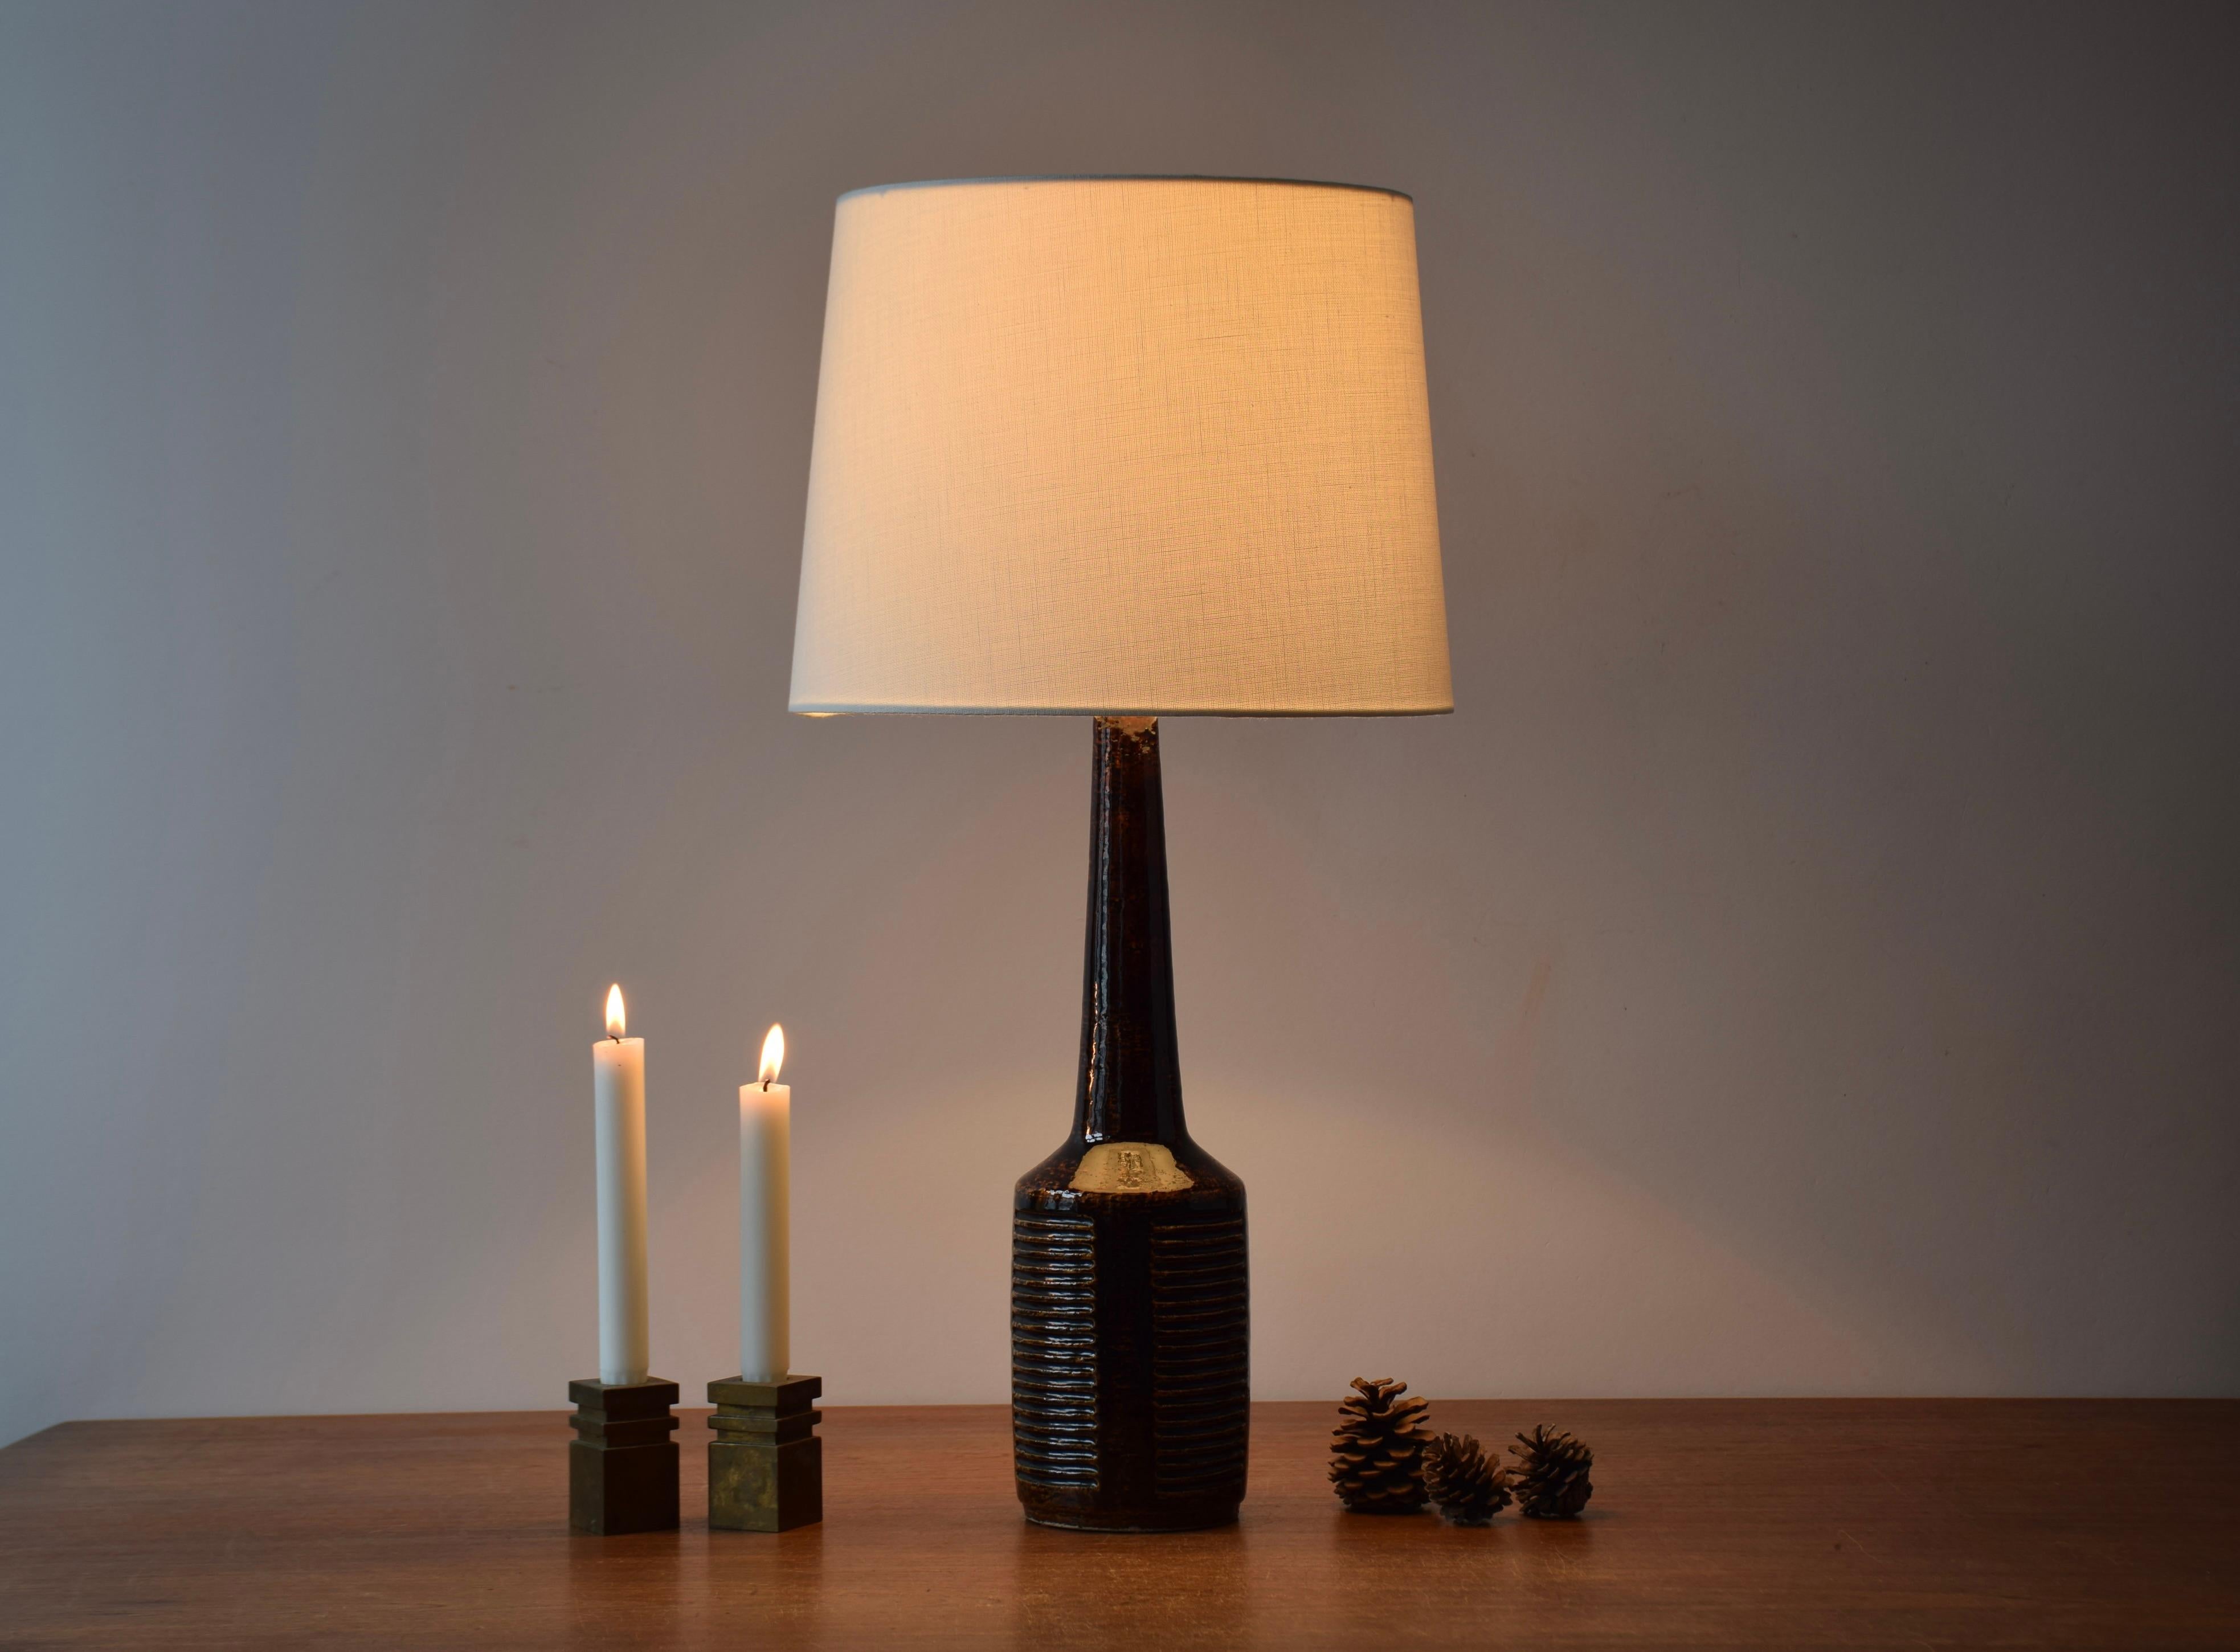 Lampe de table haute du milieu du siècle, du fabricant danois Palshus.
La lampe a été conçue par Per Linnemann-Schmidt et produite vers les années 1960.
Il a une glaçure chaude brun foncé et est fabriqué avec de l'argile chamottée qui donne une